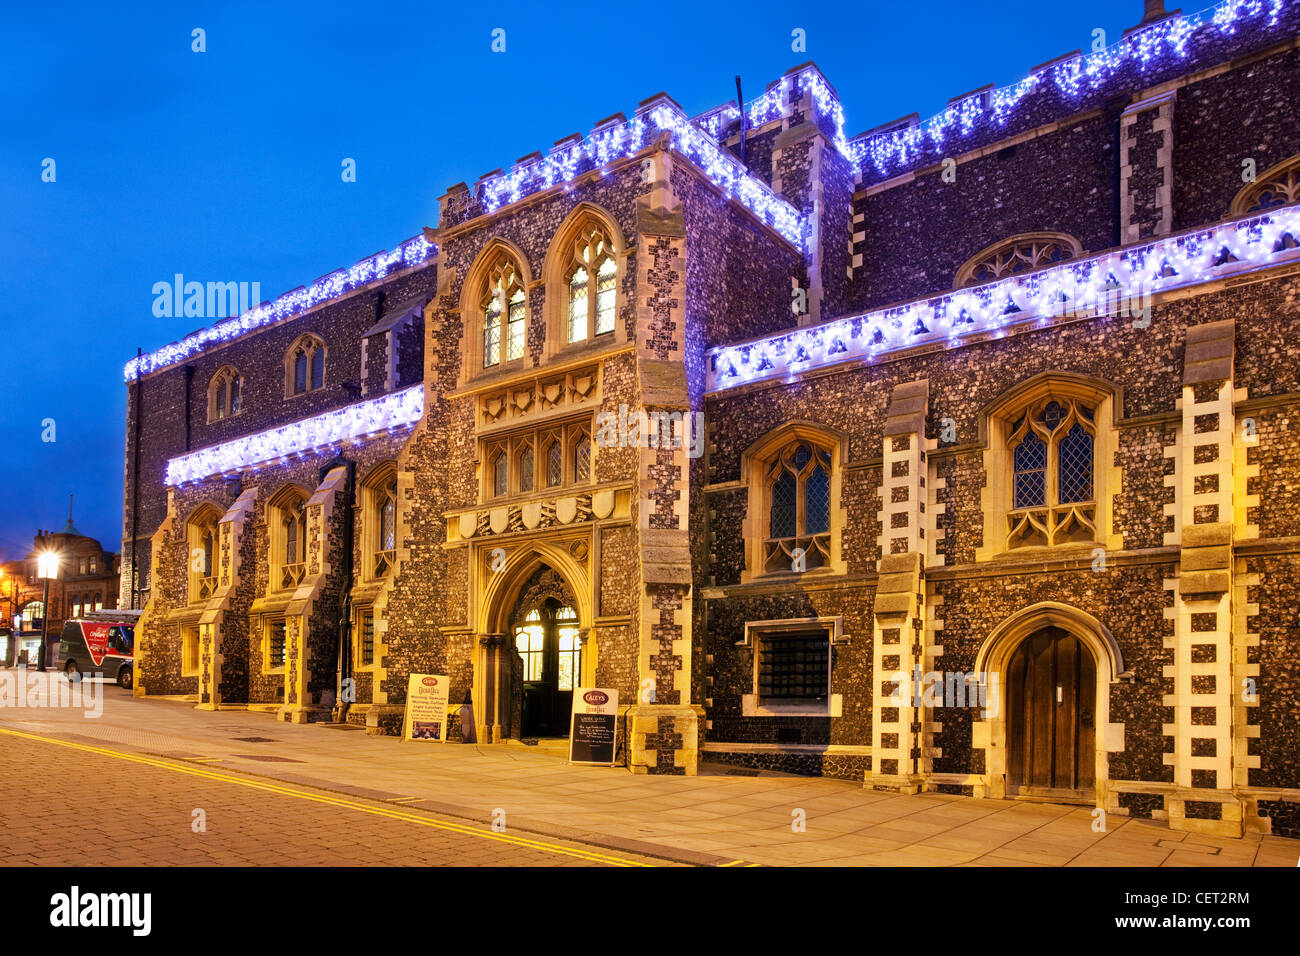 Die Guildhall in Norwich Stadtzentrum zu Weihnachten beleuchtet. Stockfoto